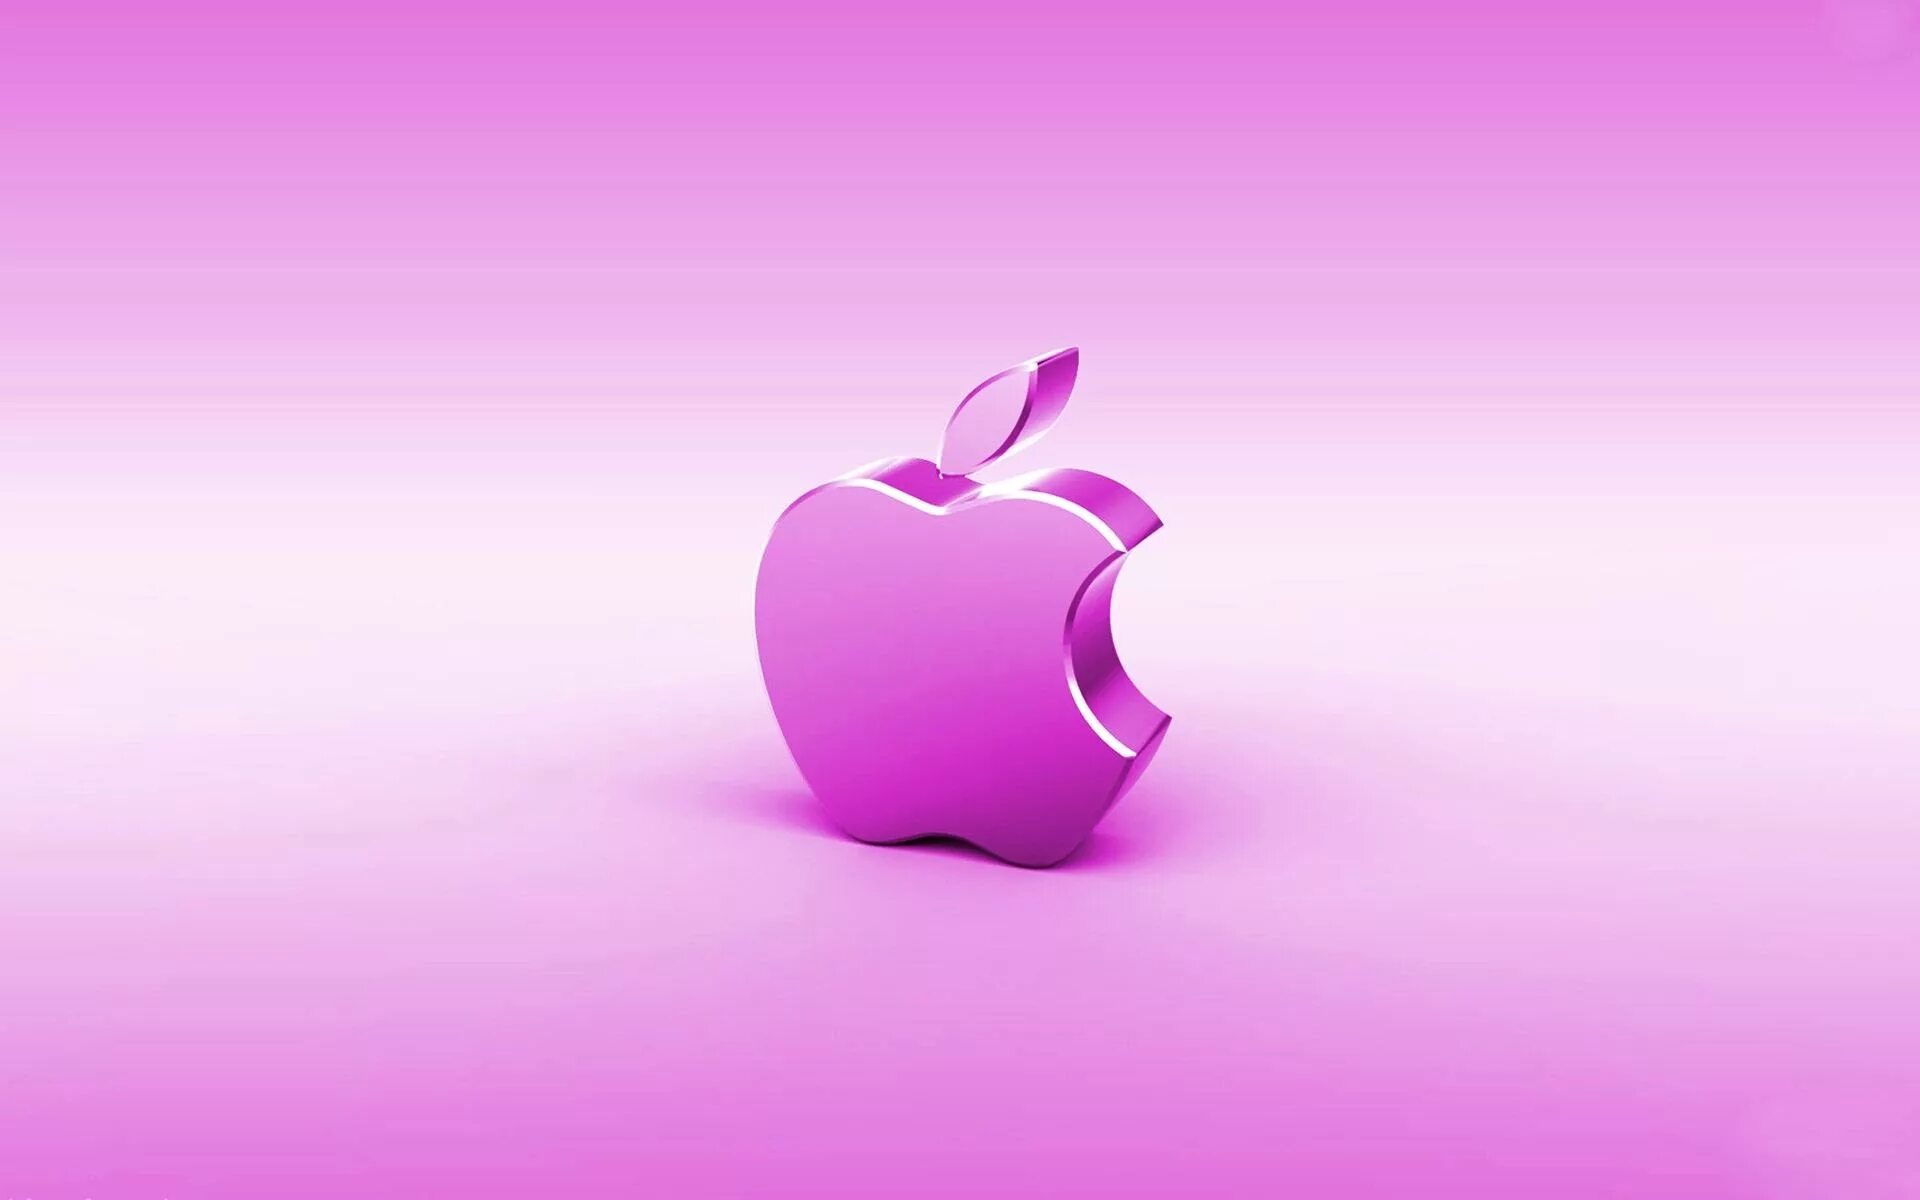 Обои на айфон яблоко. Логотип Apple. Обои Apple. Яблоко айфон. Фон Apple для рабочего стола.